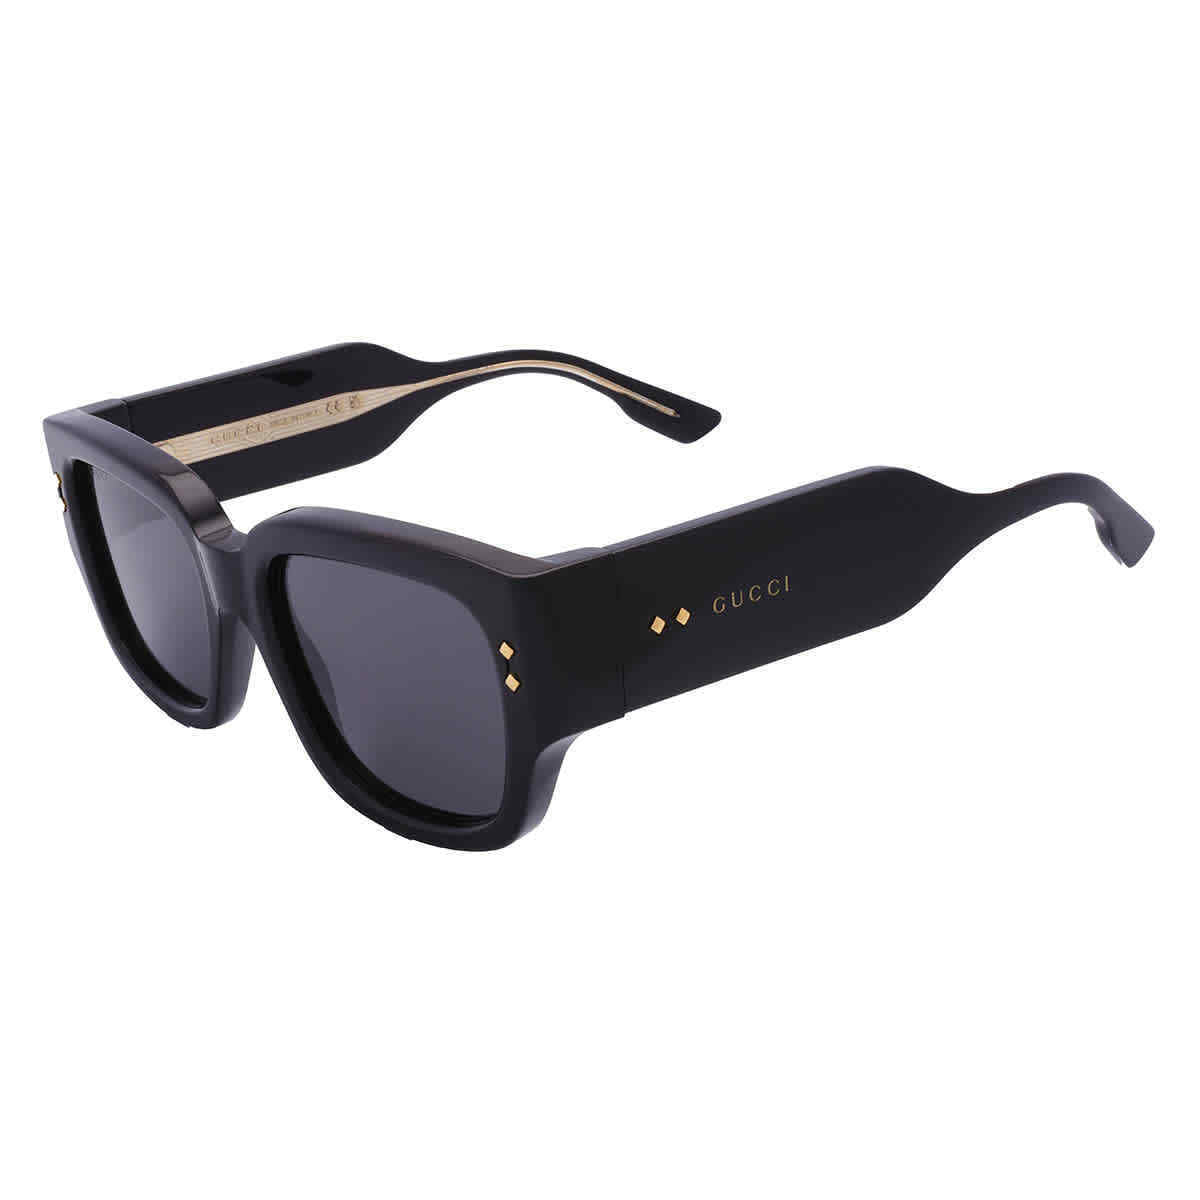 Gucci GG1261S-001-54 54mm New Sunglasses